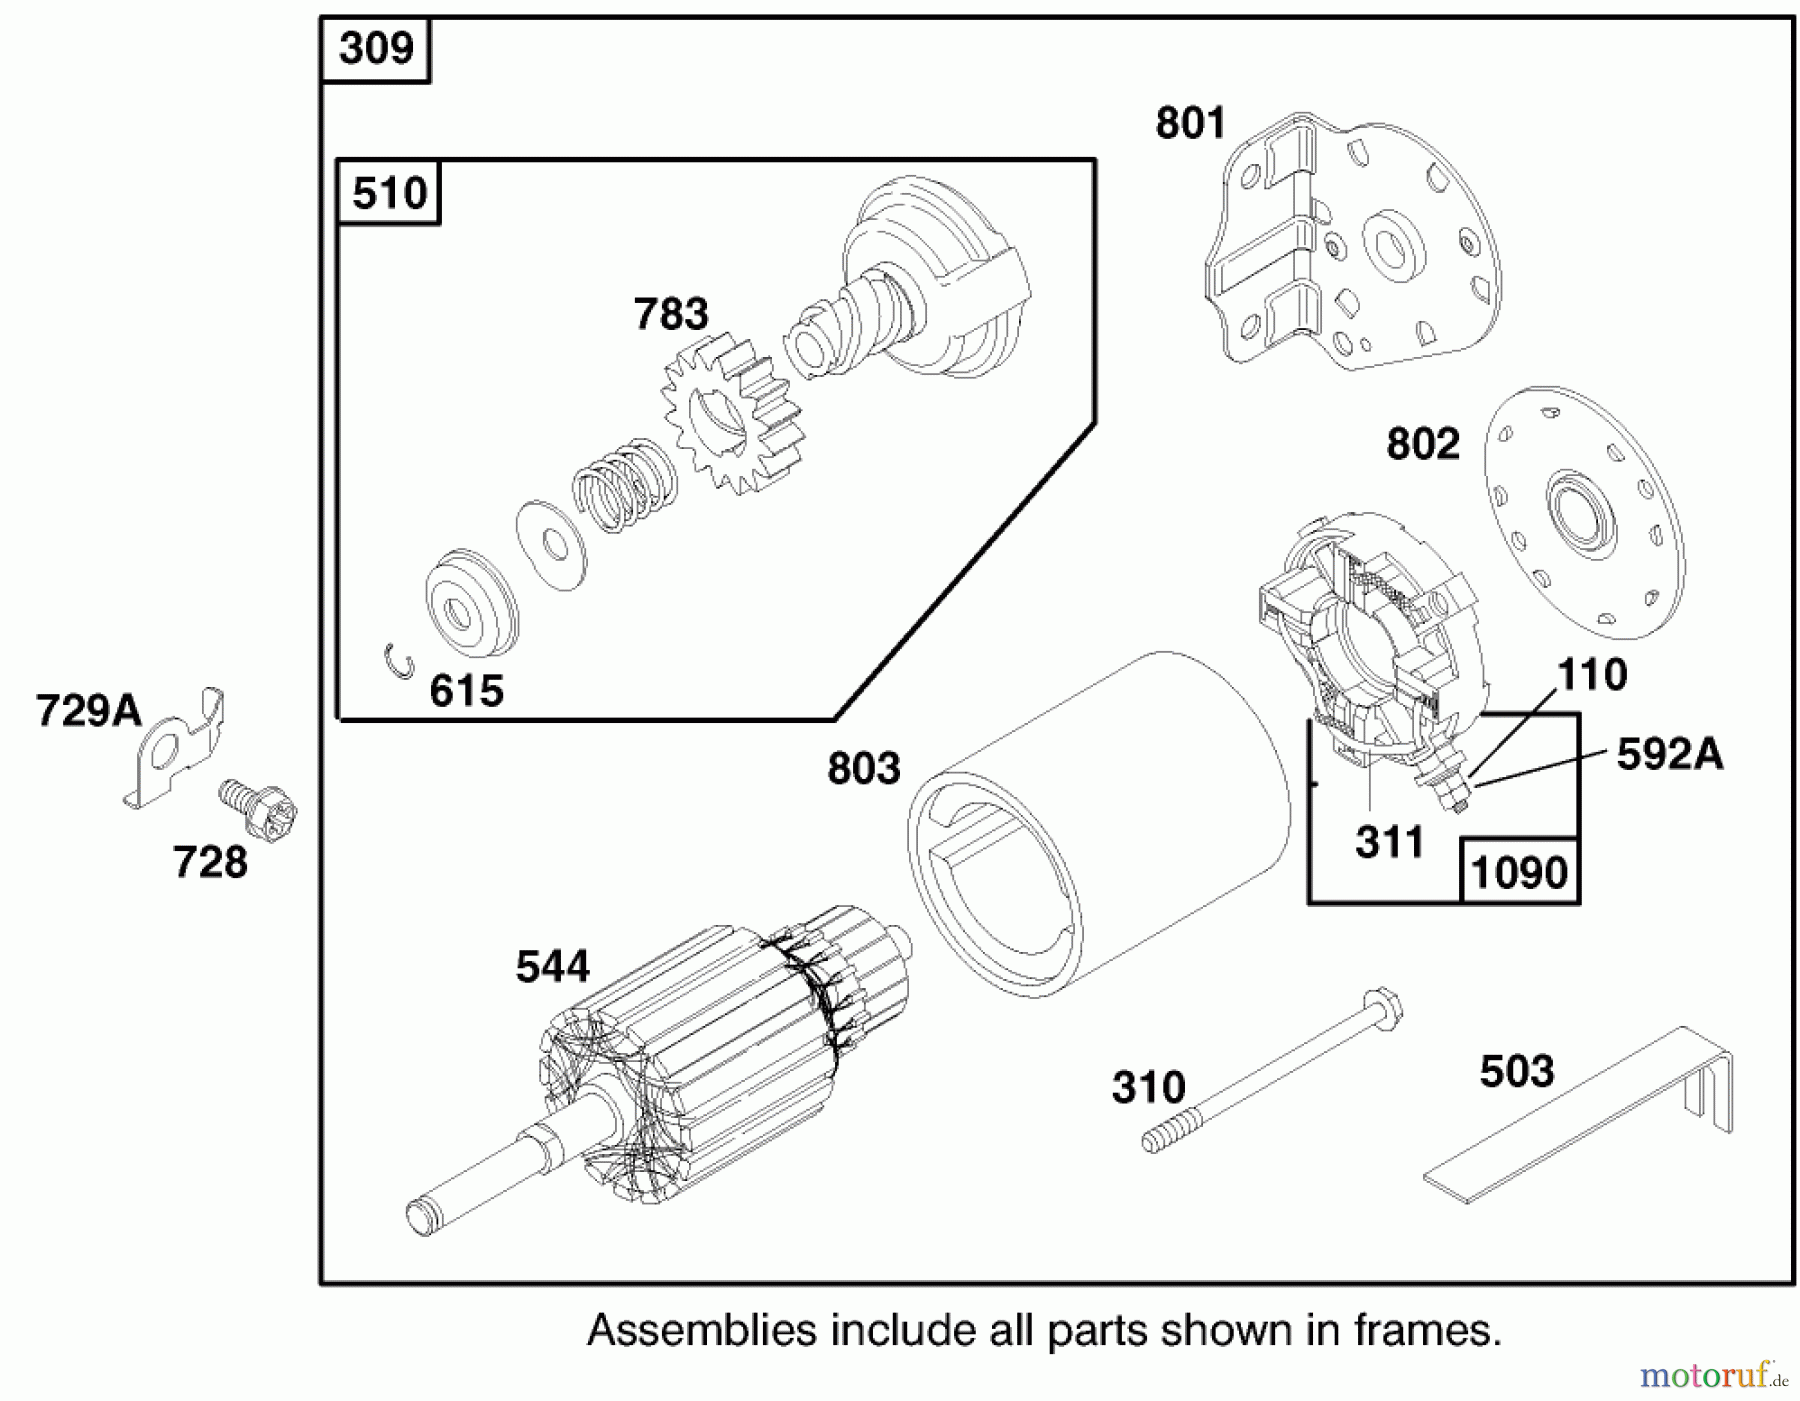  Toro Neu Mowers, Lawn & Garden Tractor Seite 1 71189 (12-32XL) - Toro 12-32XL Lawn Tractor, 1998 (8900001-8999999) ENGINE BRIGGS & STRATTON MODEL 284707-1148-E1 #8